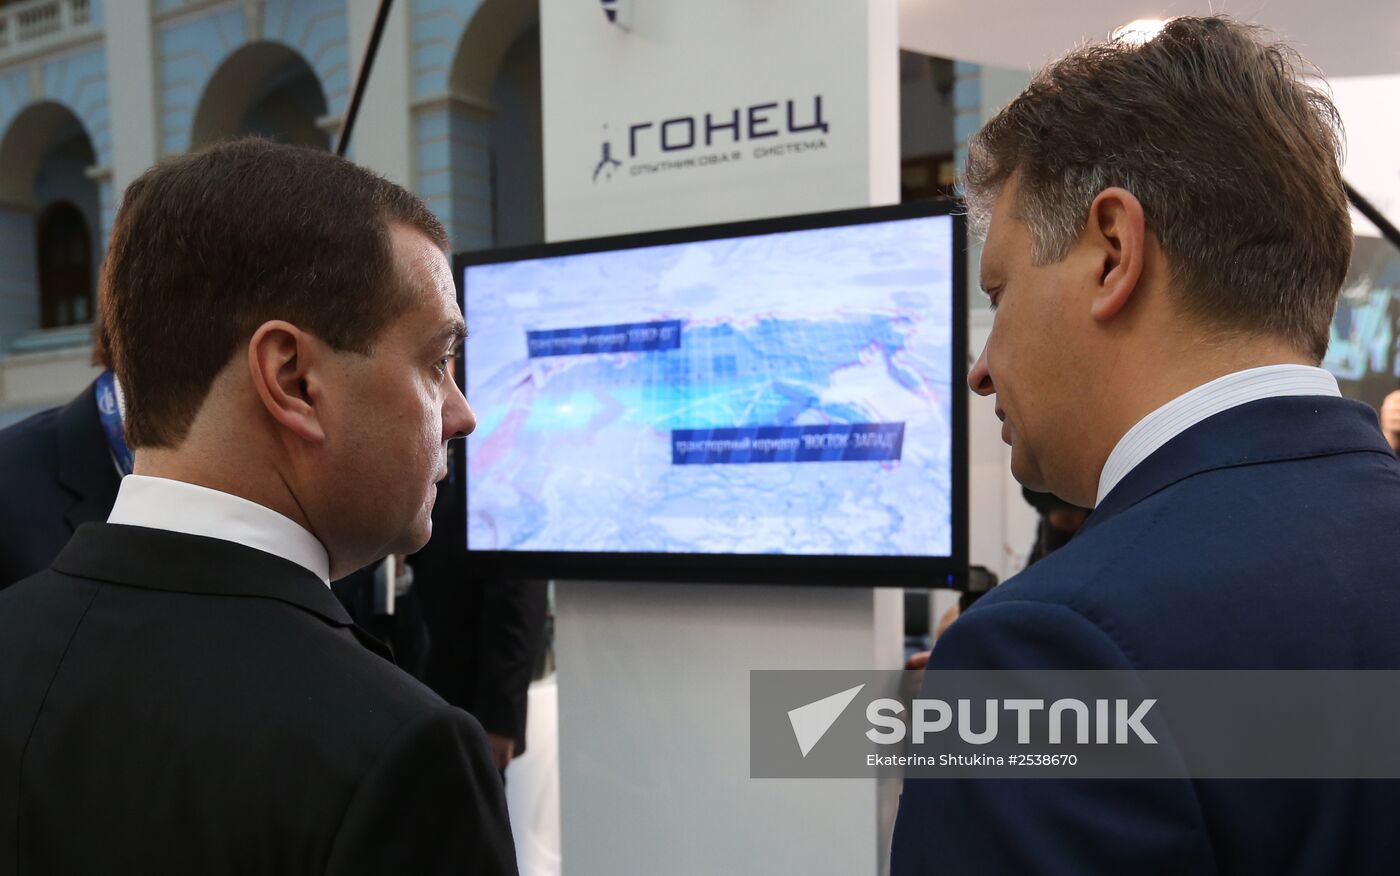 Dmitry Medvedev attends International Forum "Transport of Russia"